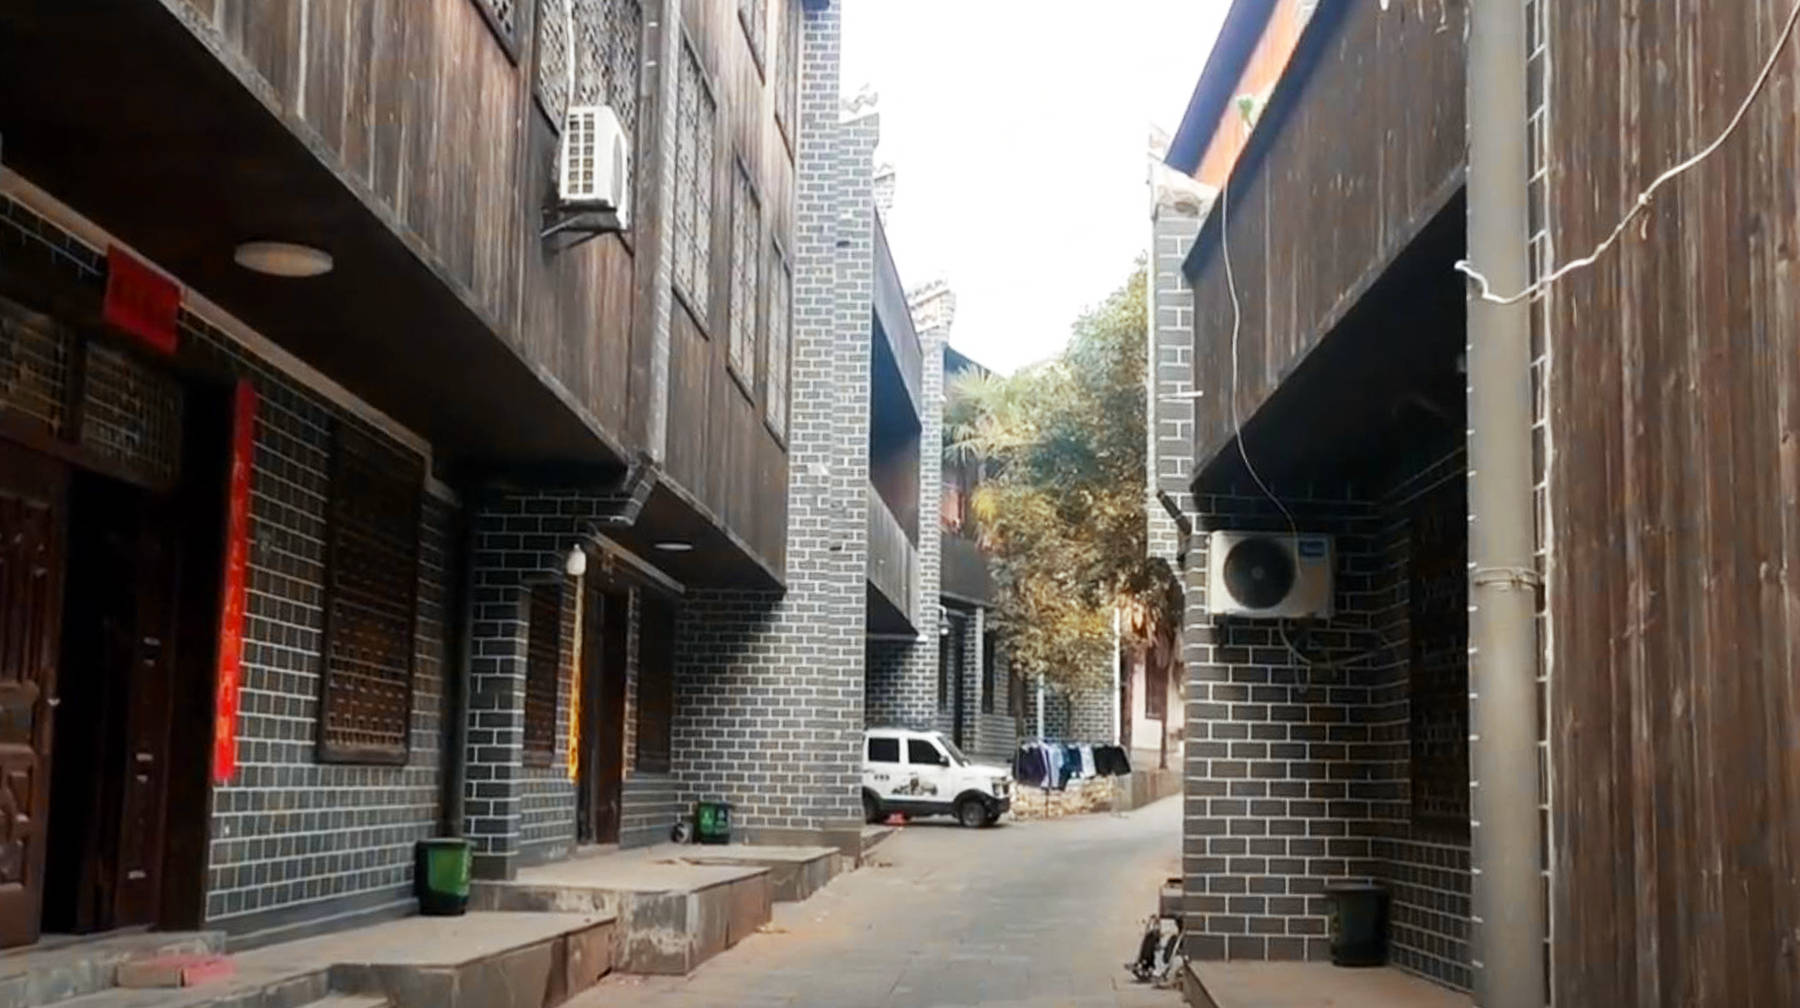 武汉郊区有座美丽小村,遍布古典风格民房,一条老巷子充满年代感